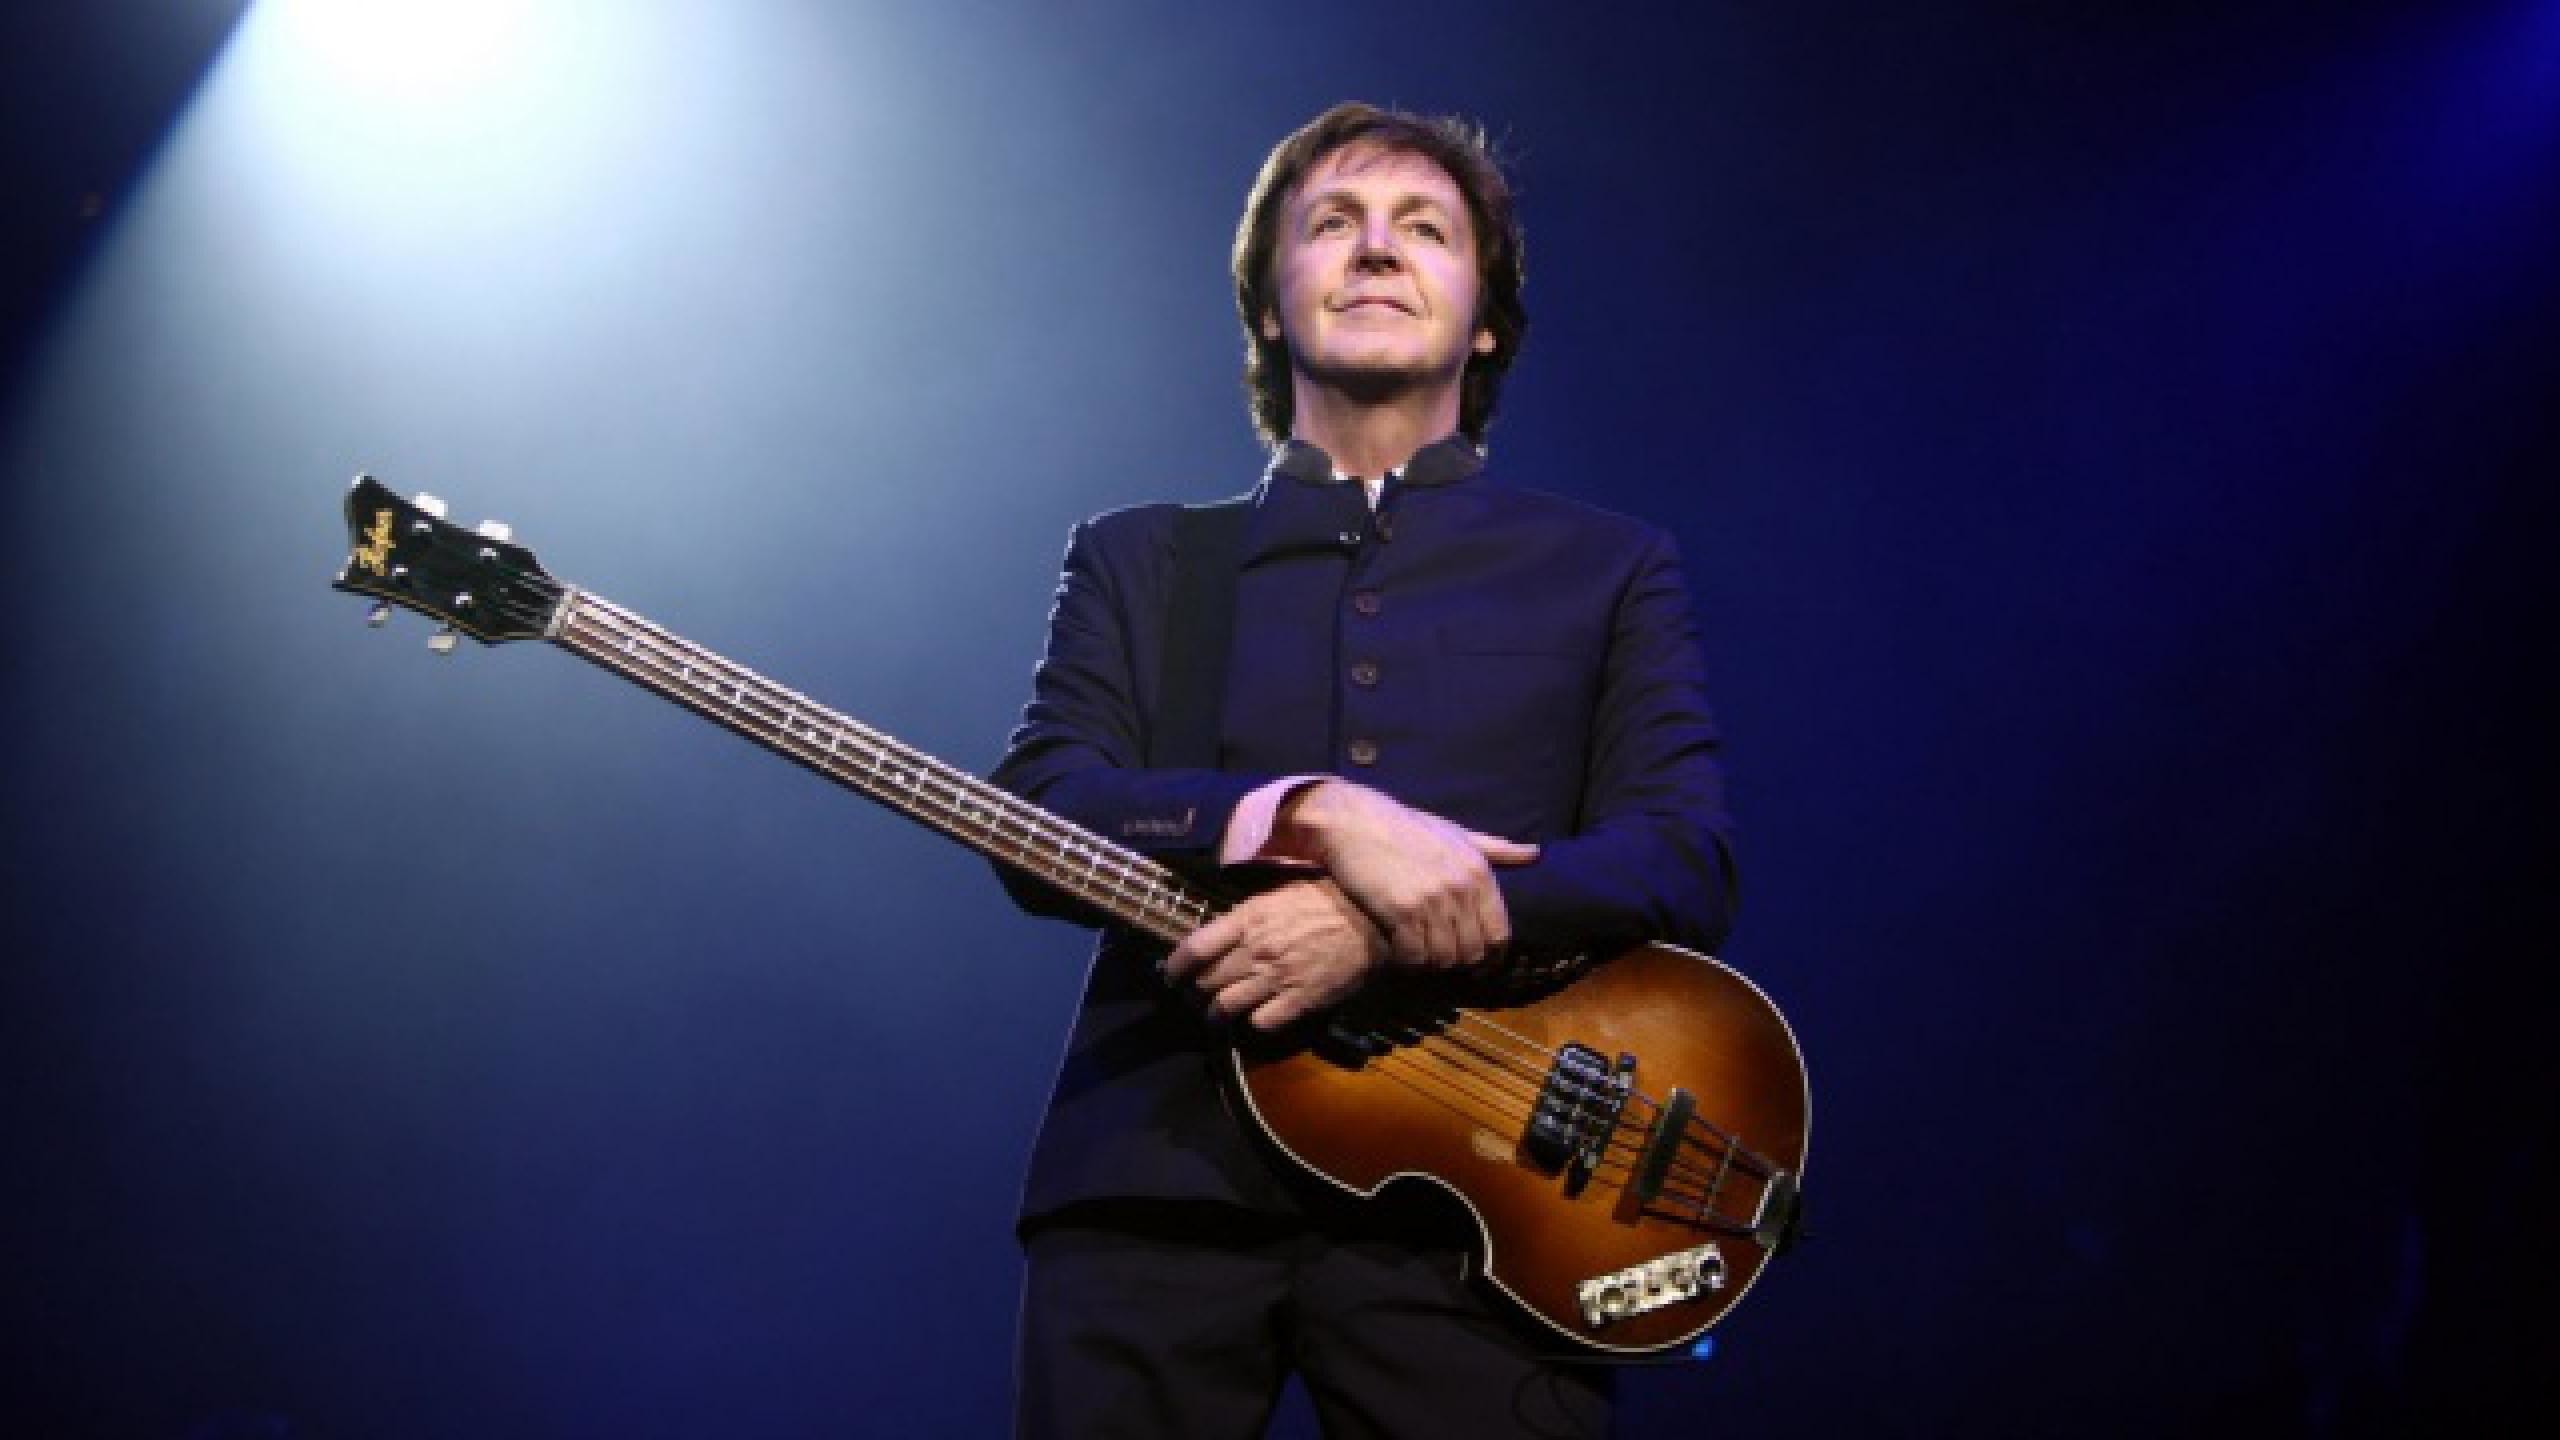 2560x1440 Paul McCartney Tickets fÃ¼r 2017 2018 Tour. Information Ã¼ber Konzerte, Tour  und Karten von Paul McCartney in 2017 2018 | Wegow